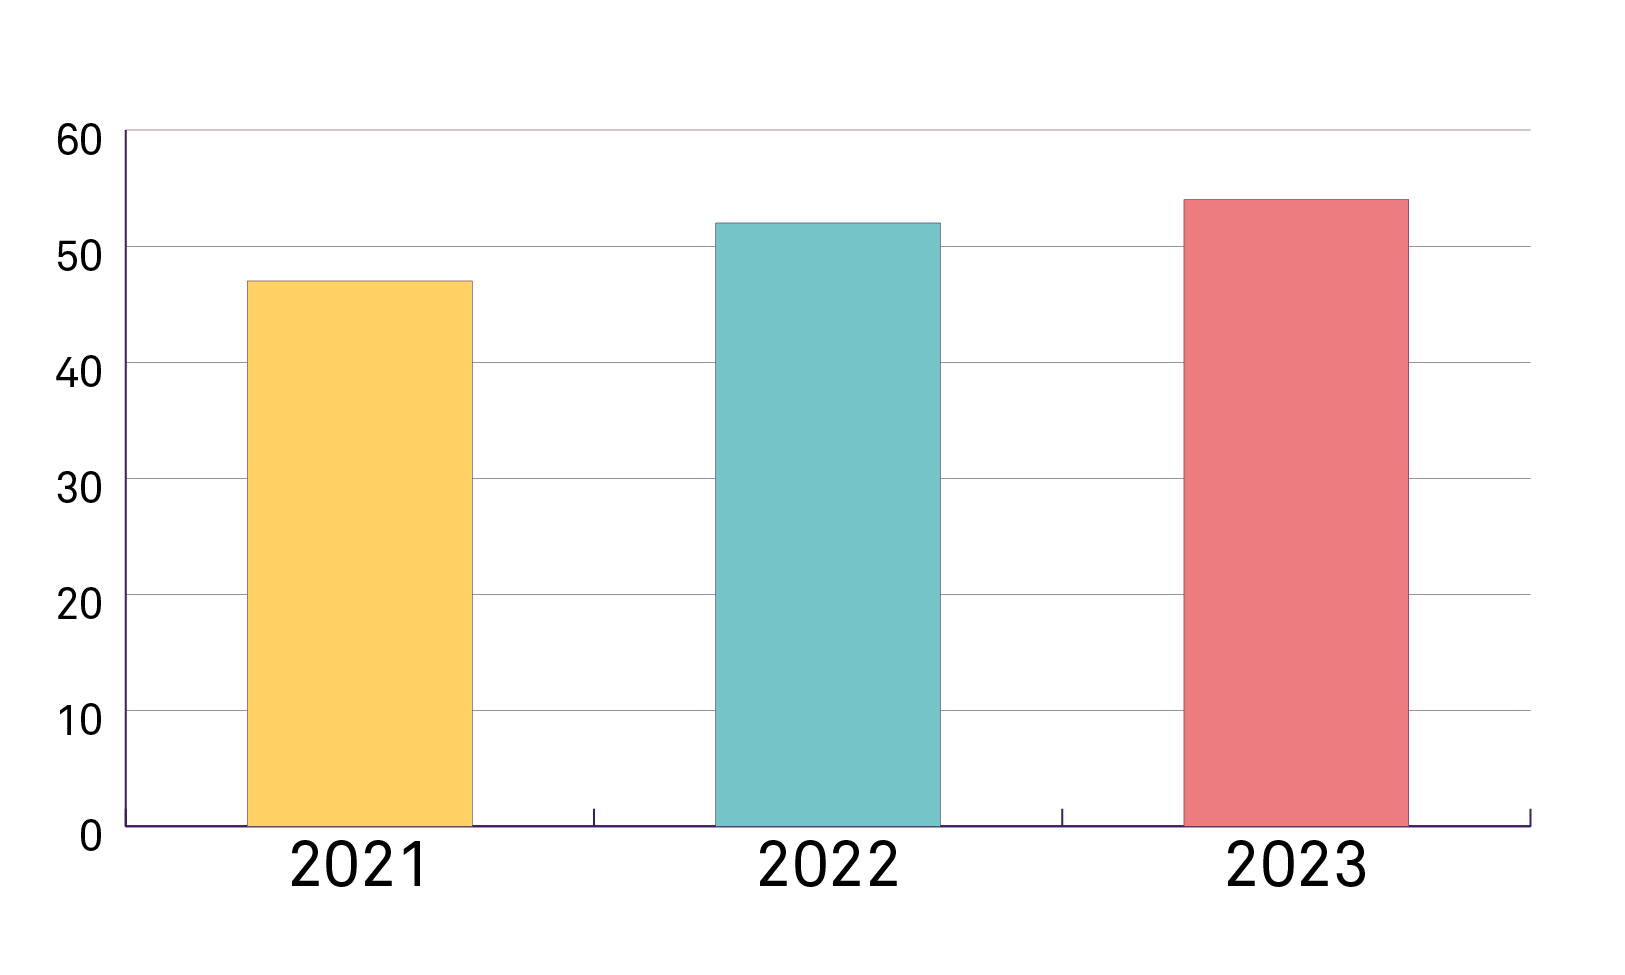 En illustration av ett diagram med tre staplar som visar CSN:s ökning av anseendeindex. En gul stapel för 2021 visar en ungefärlig siffra på 47. En ljusblå stapel för 2022 visar på en ungefärlig siffra på lite över 52 och en sista rosa stapel för 2023 visar en ungefärlig siffra på strax över 54.